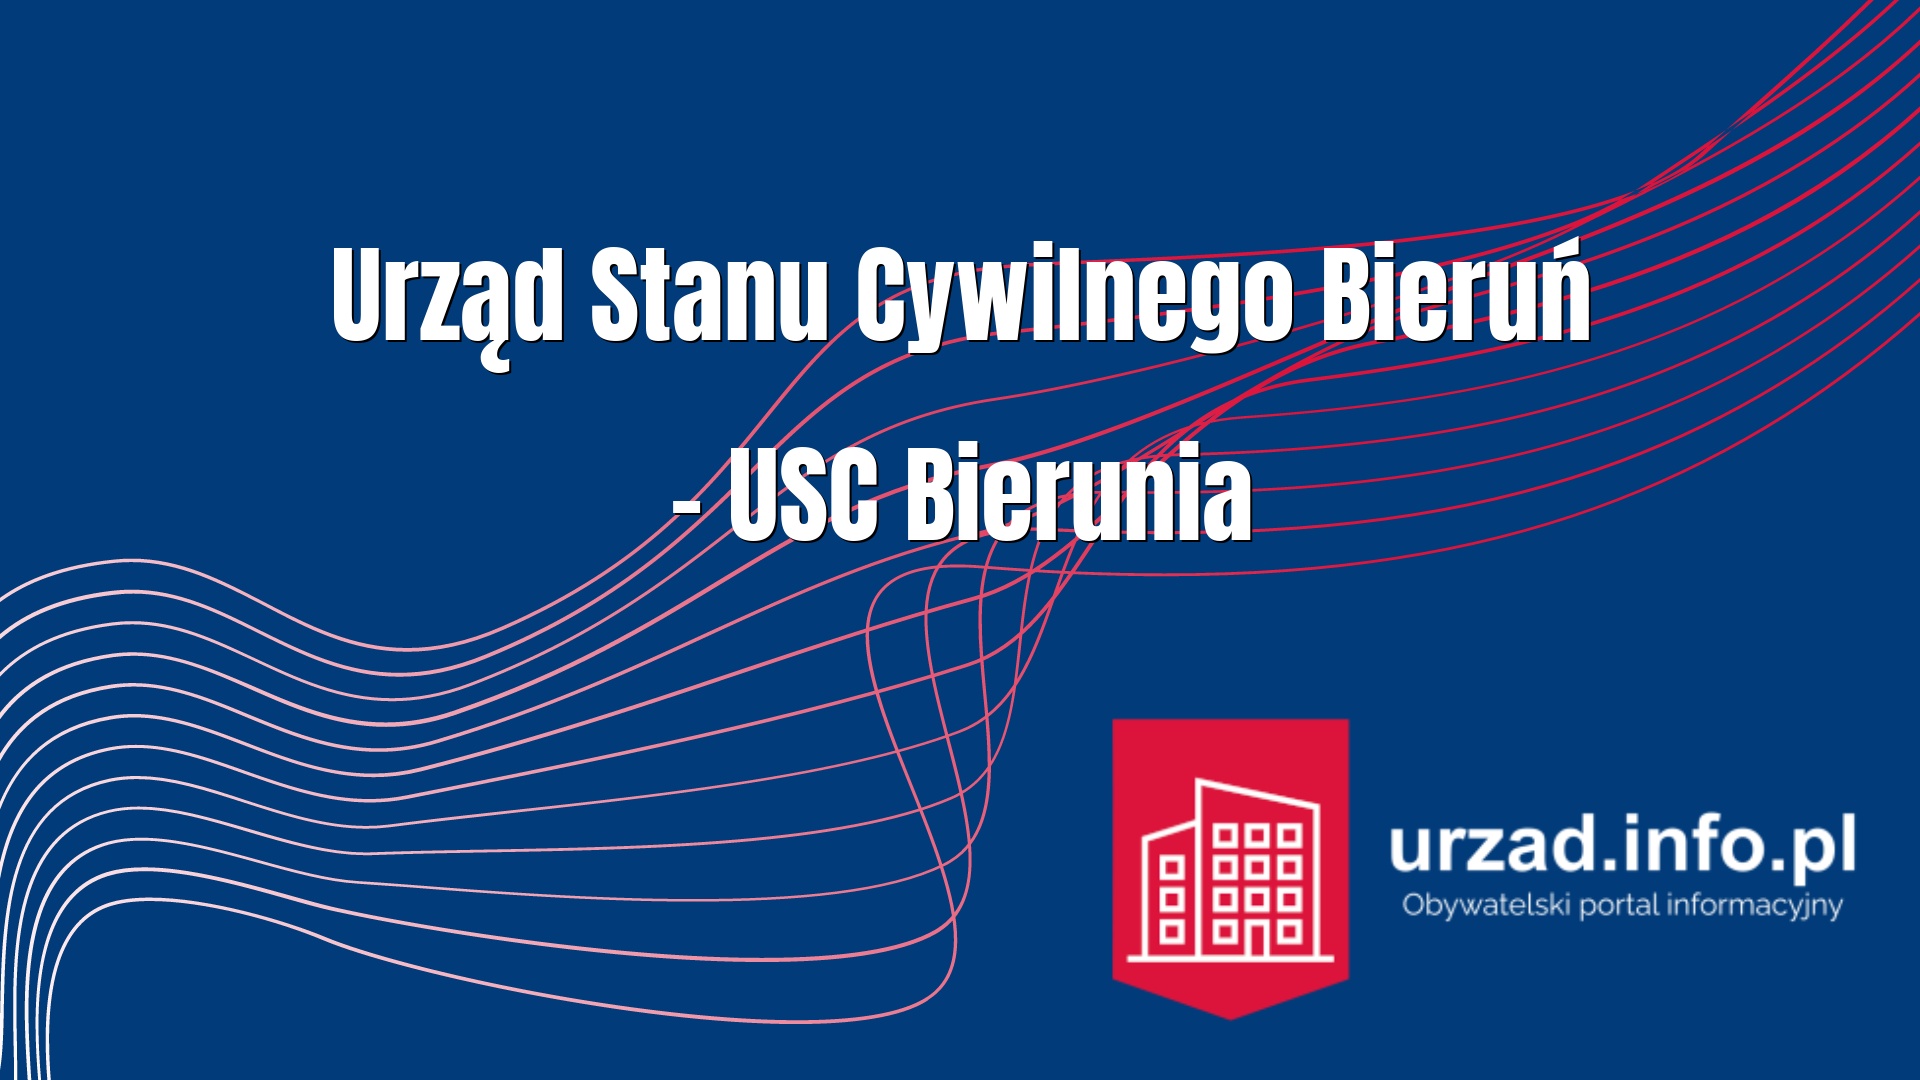 Urząd Stanu Cywilnego Bieruń – USC Bierunia